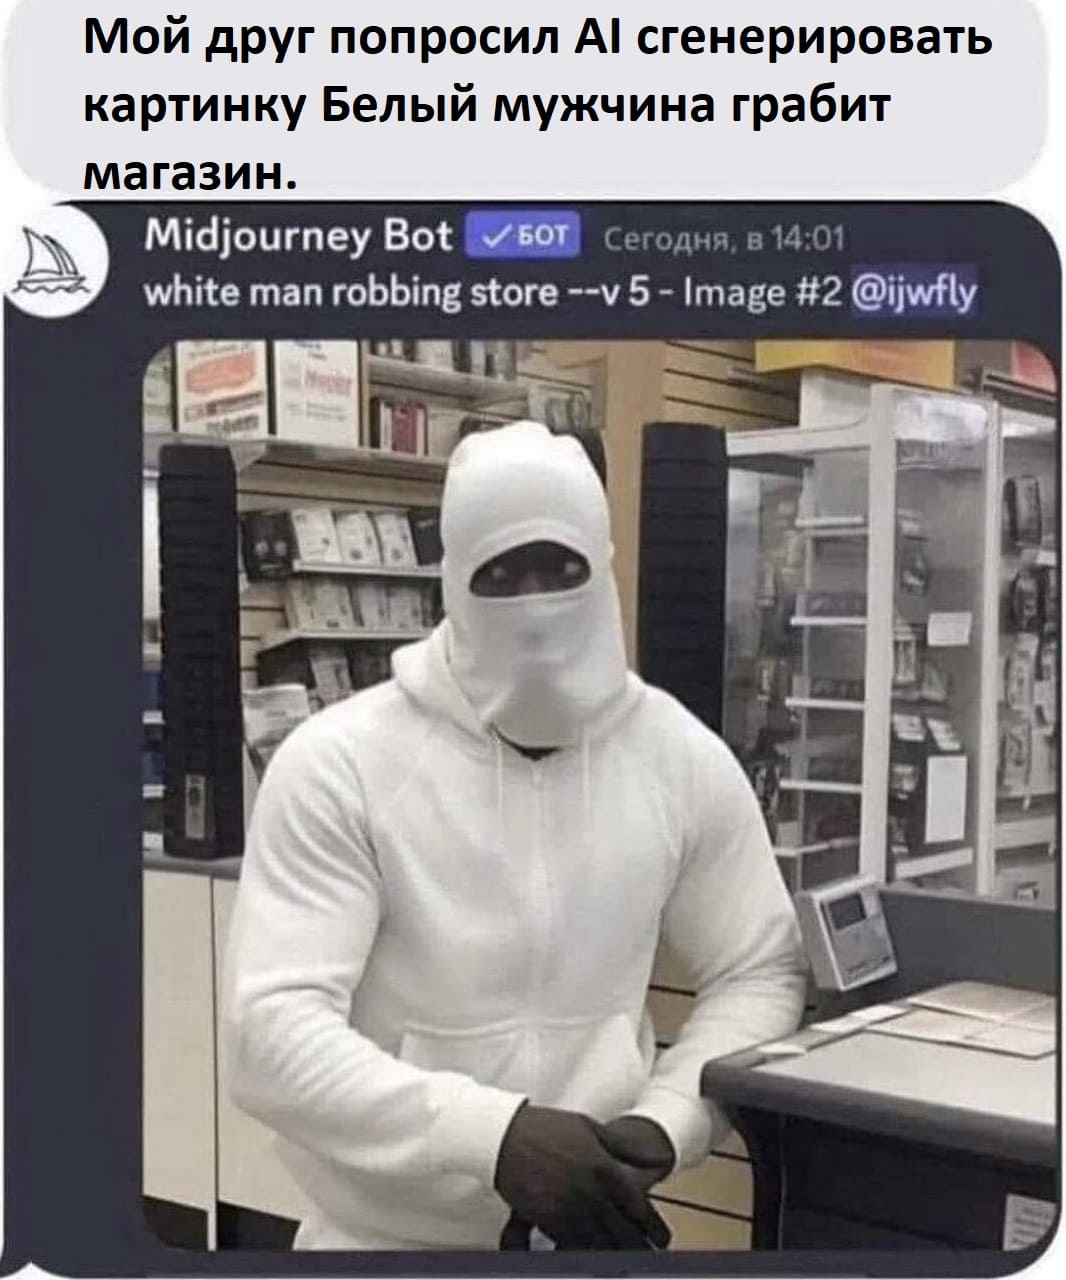 Мой друг попросил AI сгенерировать картинку «Белый мужчина грабит магазин».